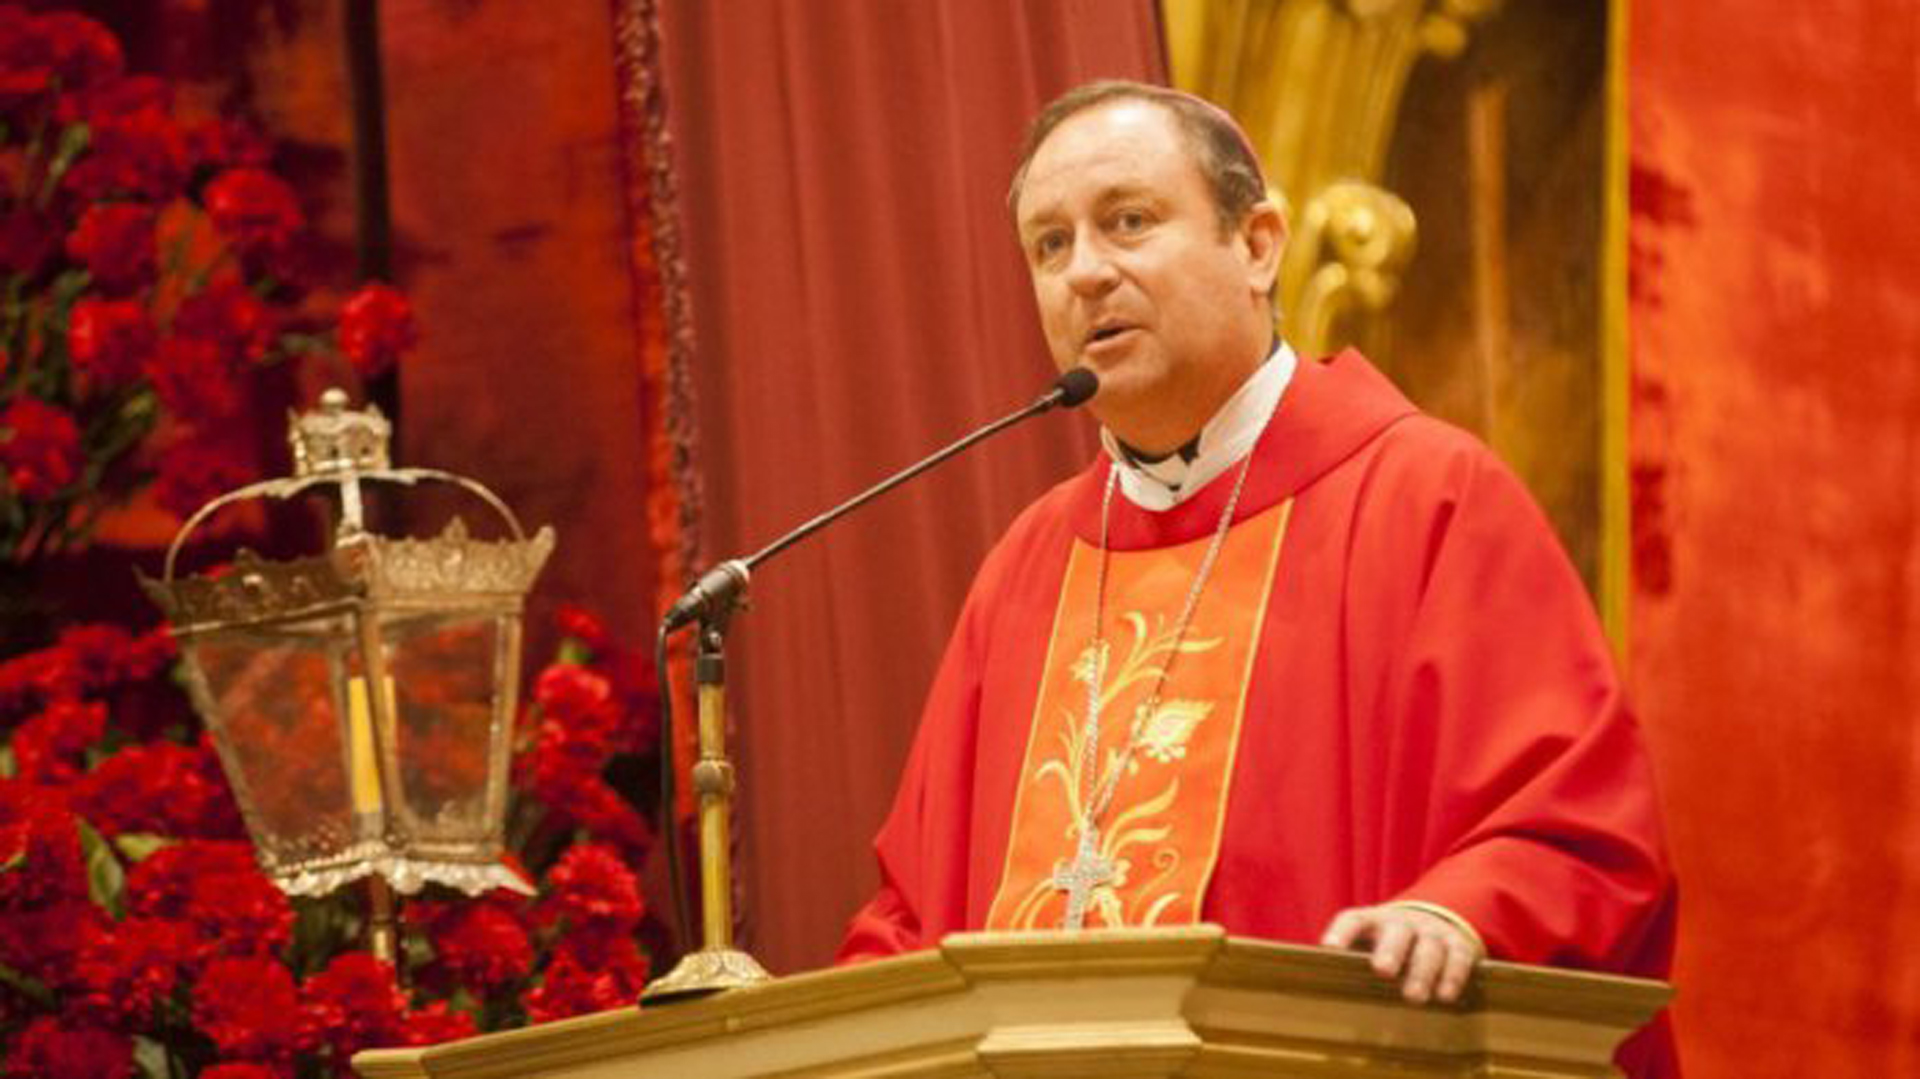 El ex obispo de Orán Gustavo Zanchetta fue condenado a 4 años y medio de prisión por abuso sexual